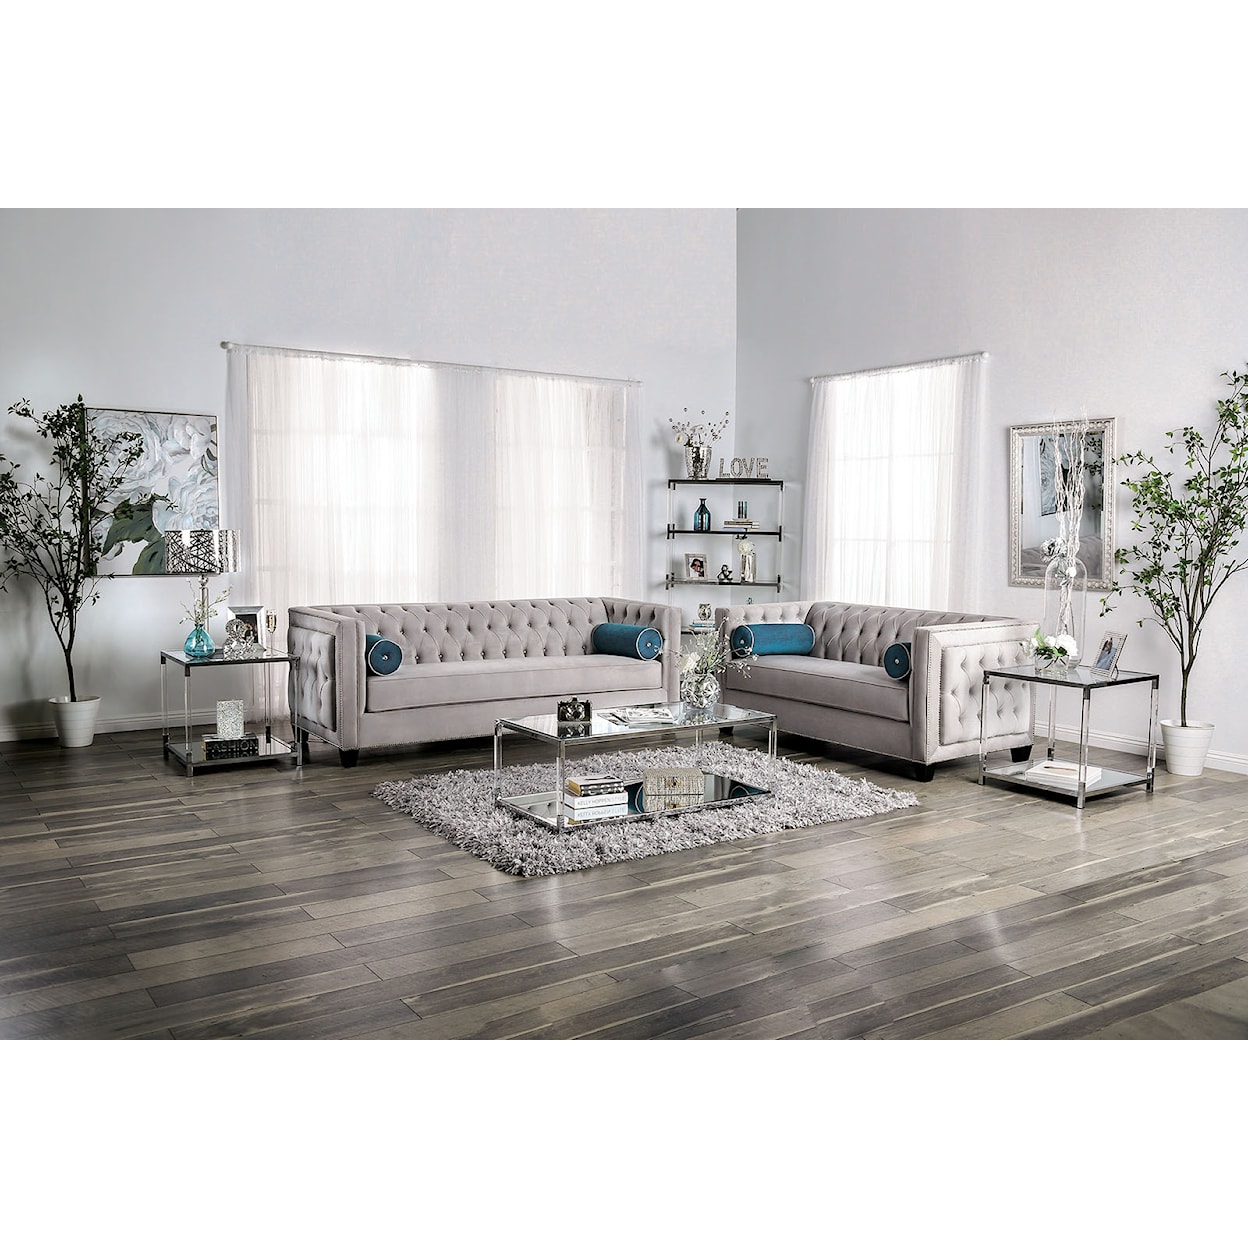 Furniture of America Silvan Sofa and Loveseat Set